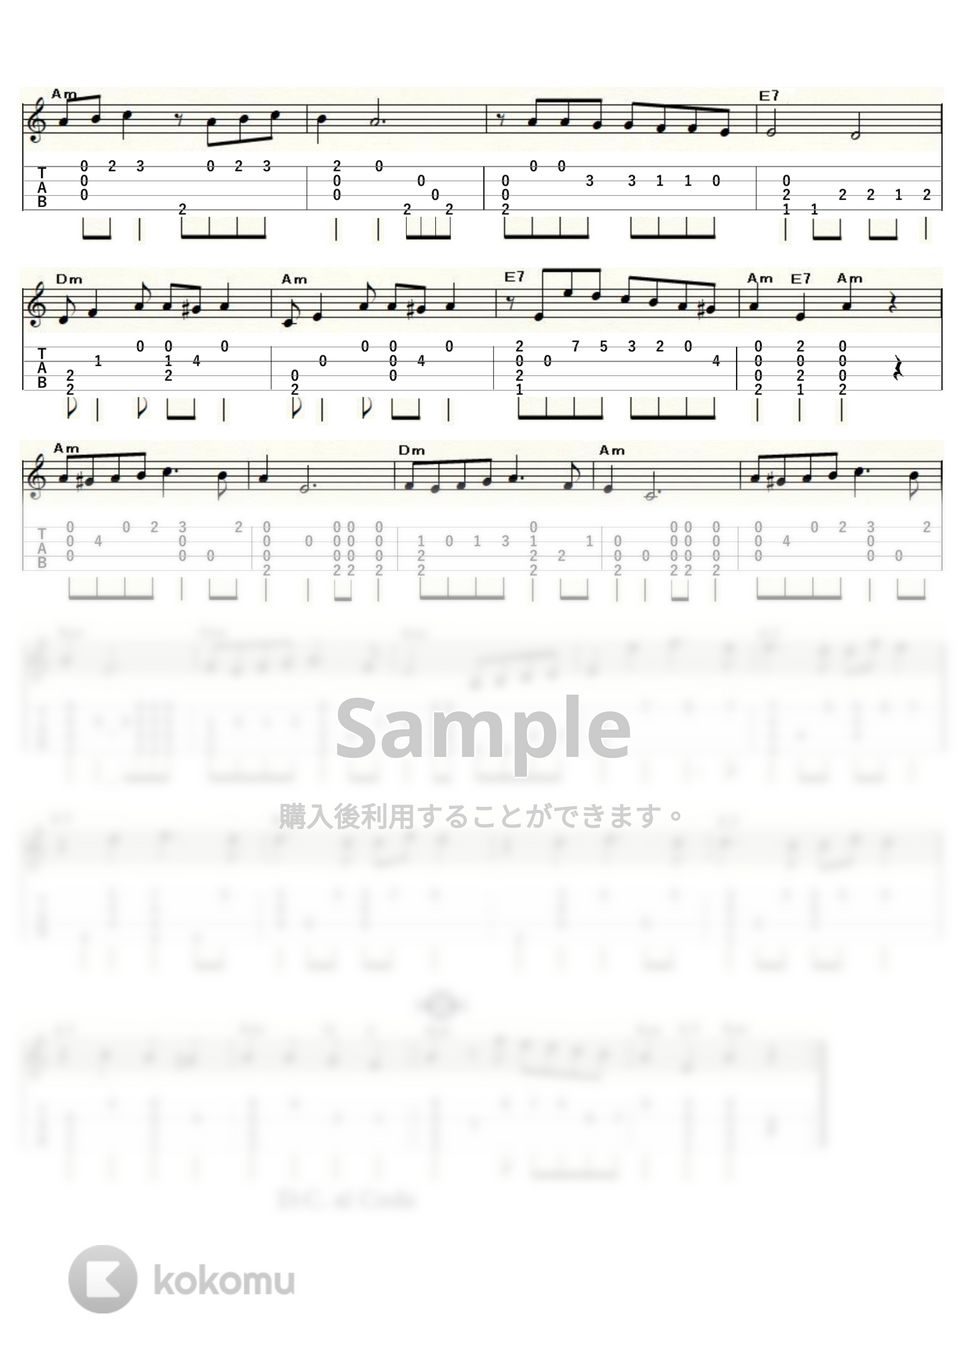 ヘラルド・マトス・ロドリゲス - ラ・クンパルシータ (ｳｸﾚﾚｿﾛ / Low-G / 初～中級) by ukulelepapa